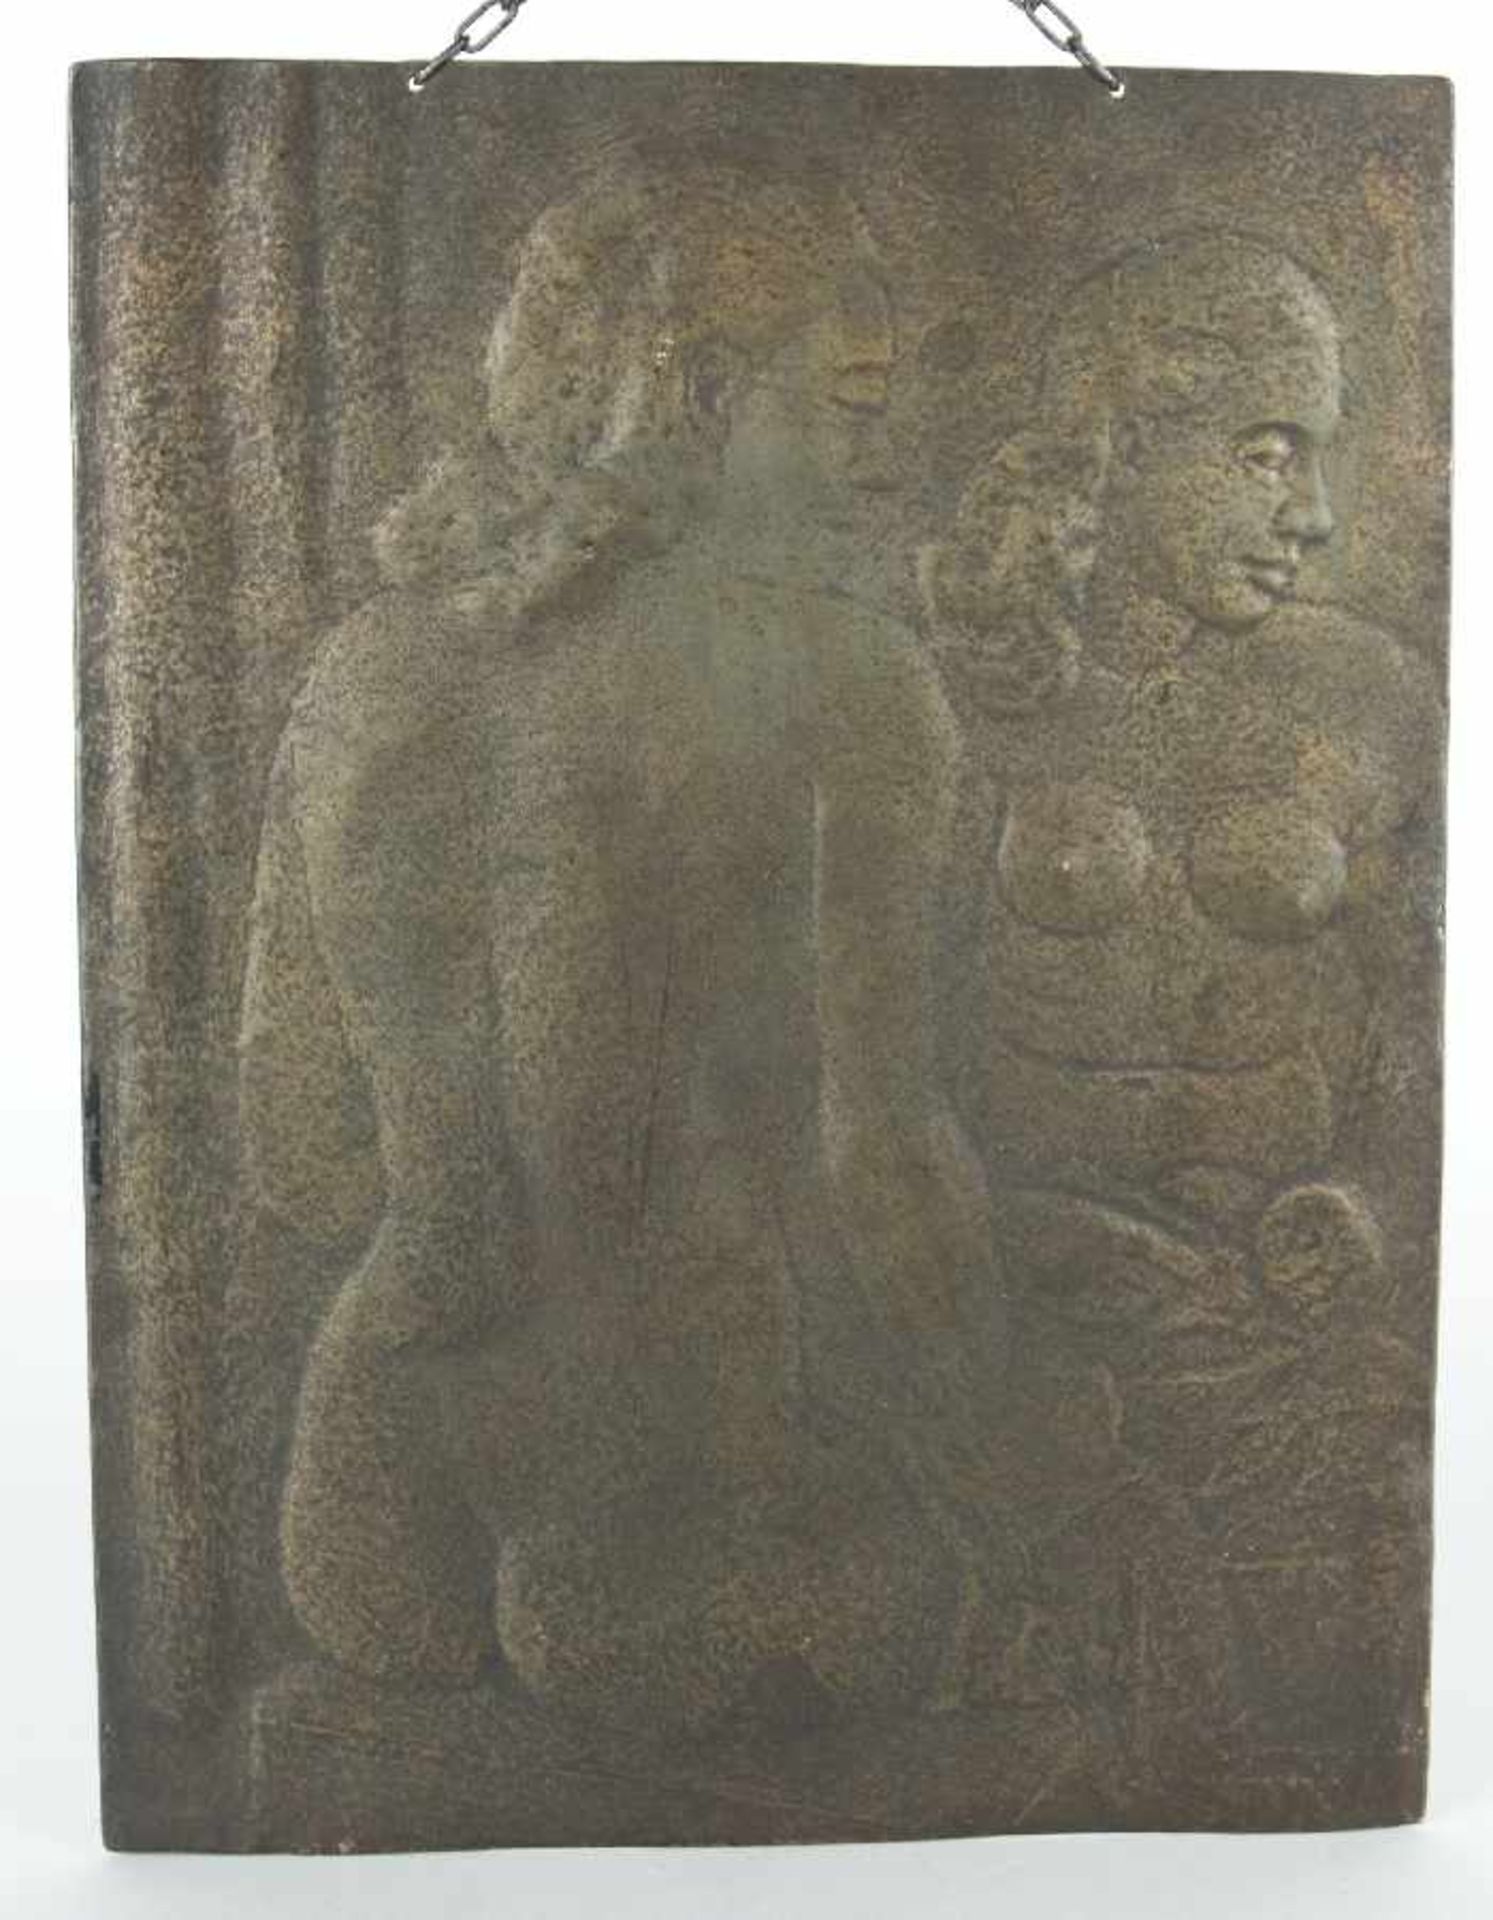 Eduard Dollerschell?Two nudesBronze relief; H 37 cm, W 28.5 cm; remnant of description lower